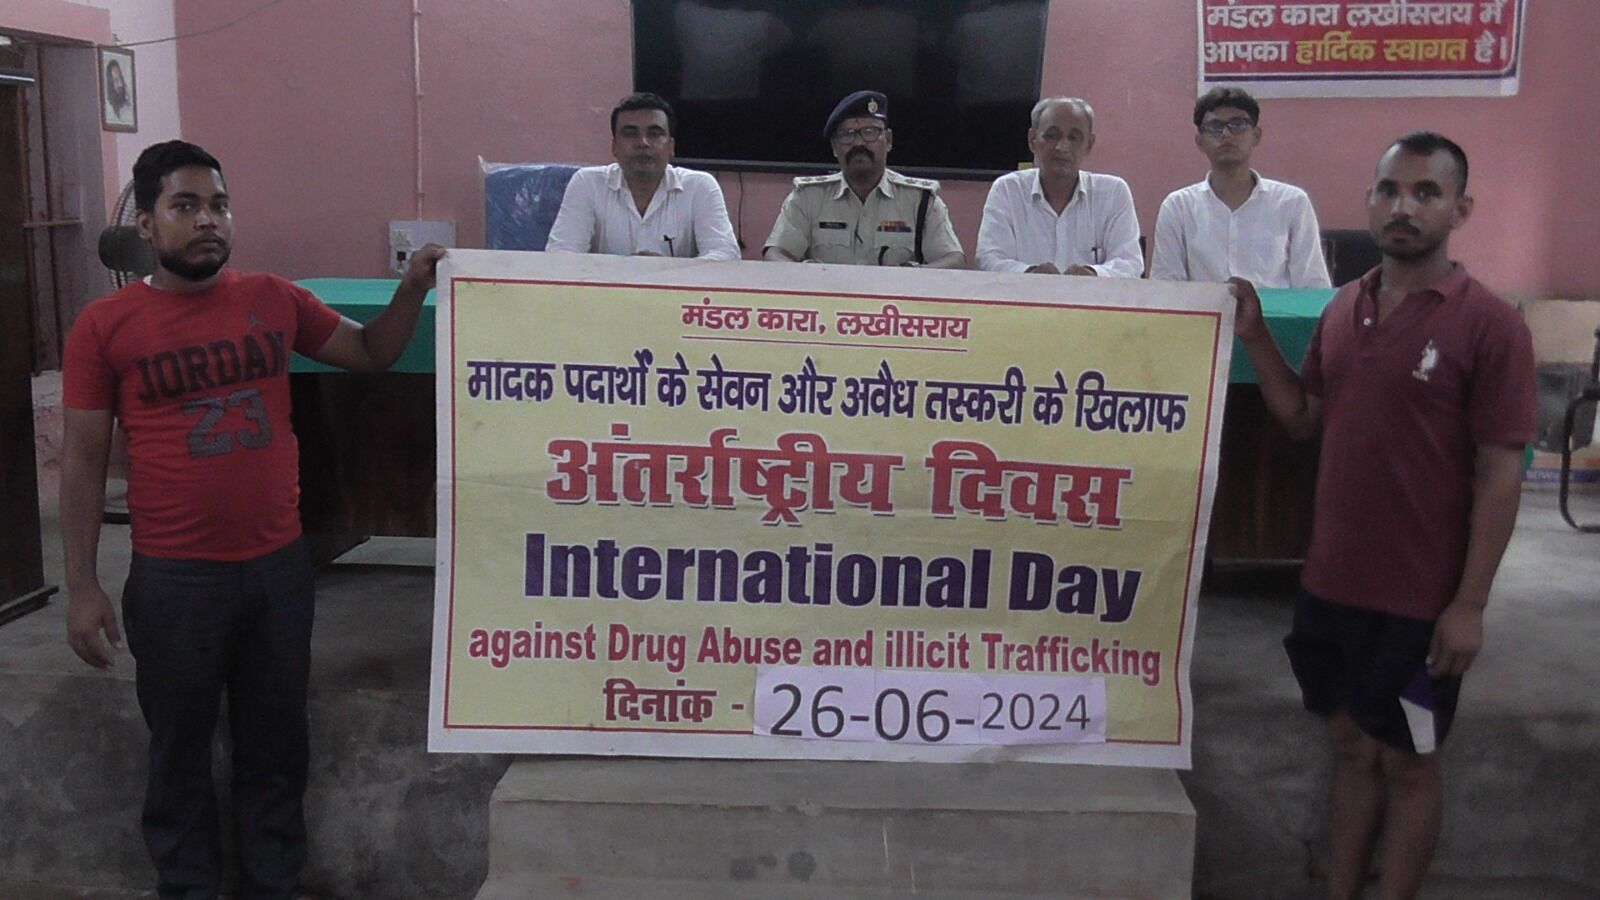 Lakhisarai: मंडल कारा में नशीली दवाओं का दुरुपयोग एवं अवैध तस्करी विषय पर आयोजित किया गया जागरूकता कार्यक्रम